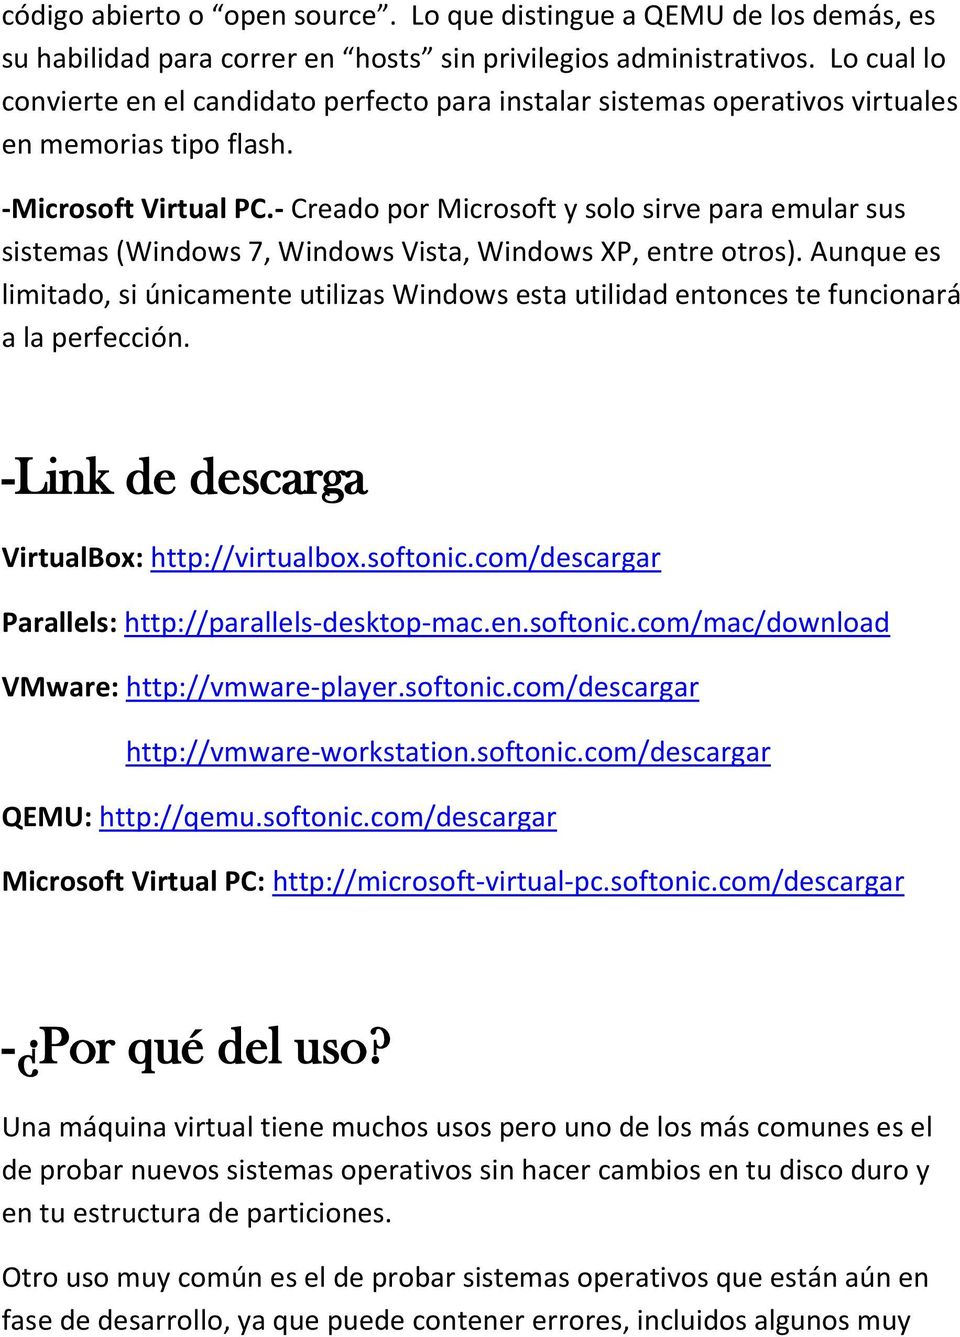 - Creado por Microsoft y solo sirve para emular sus sistemas (Windows 7, Windows Vista, Windows XP, entre otros).